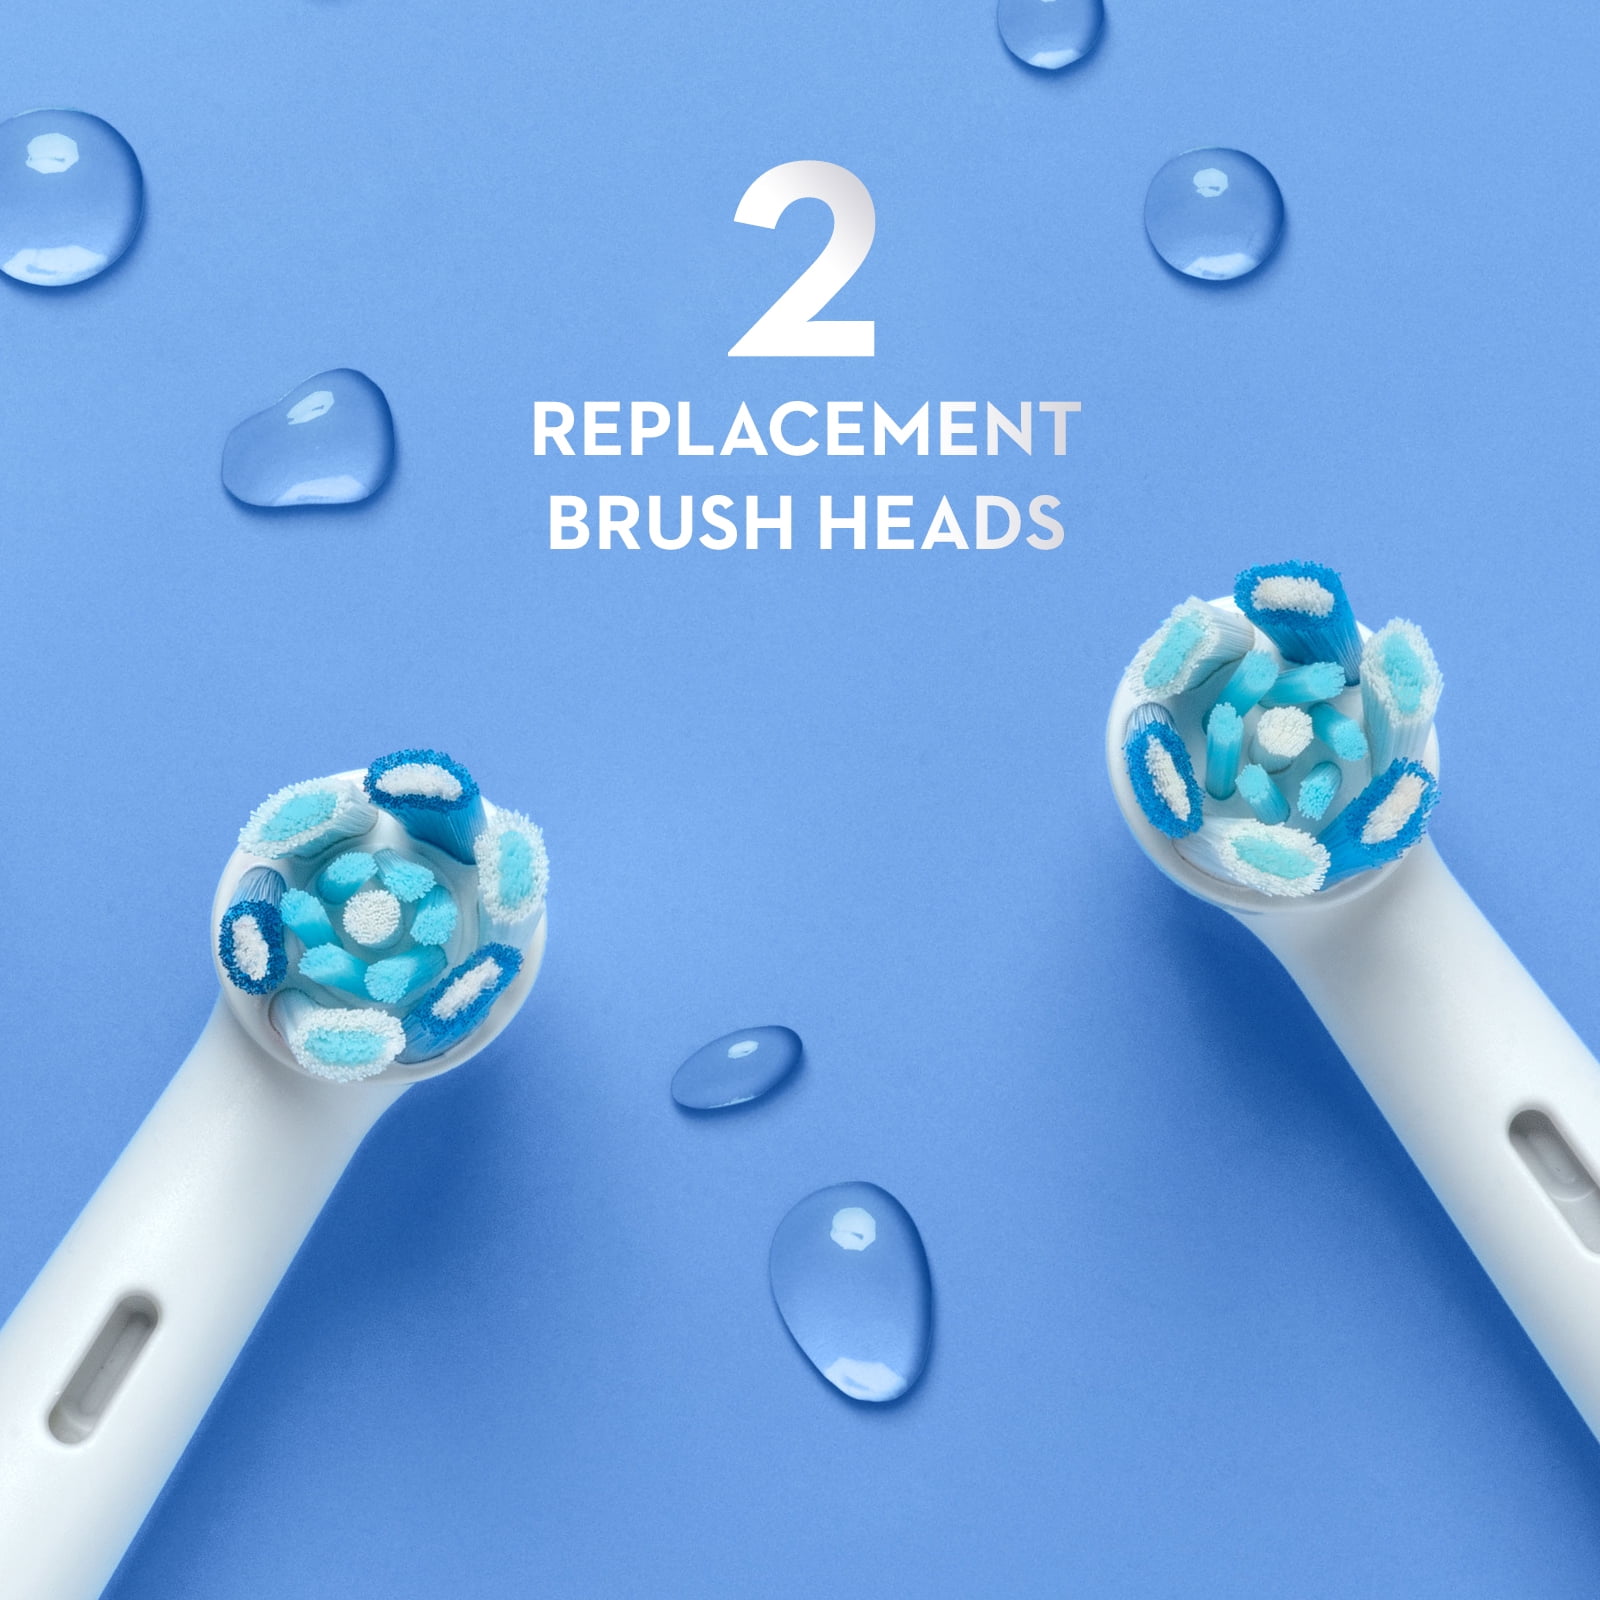 Comprar 2 cabezales de recambio Oral b - Braun iO Ultimate Clean